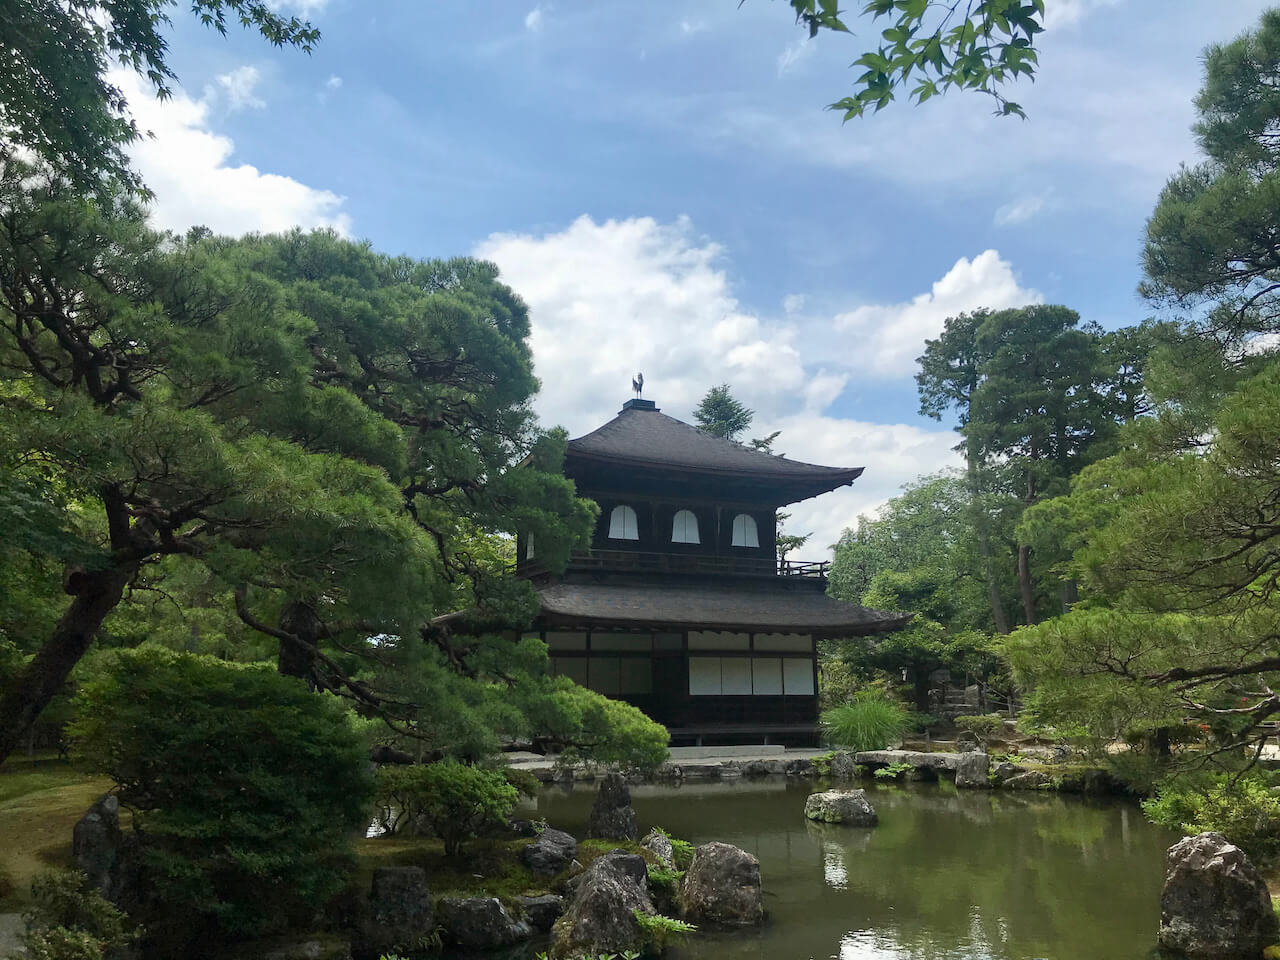 Ginkakuji Temple in Kyoto